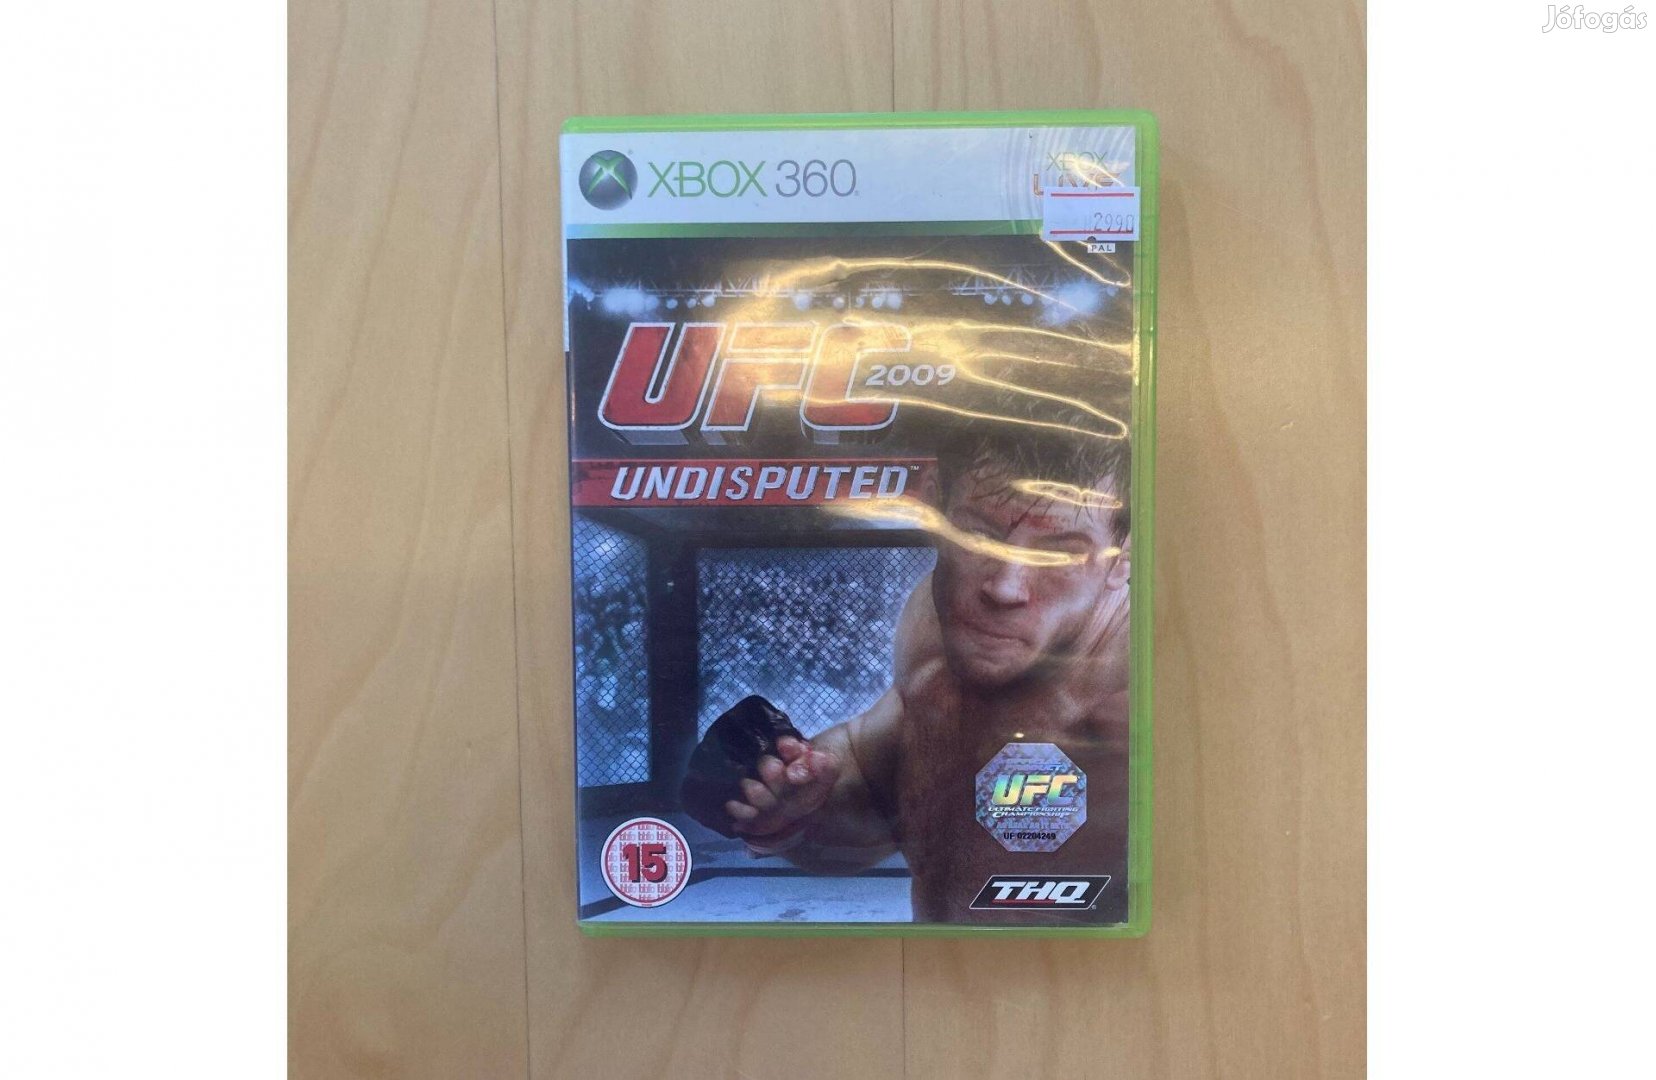 Xbox 360 UFC 2009 Undisputed Használt